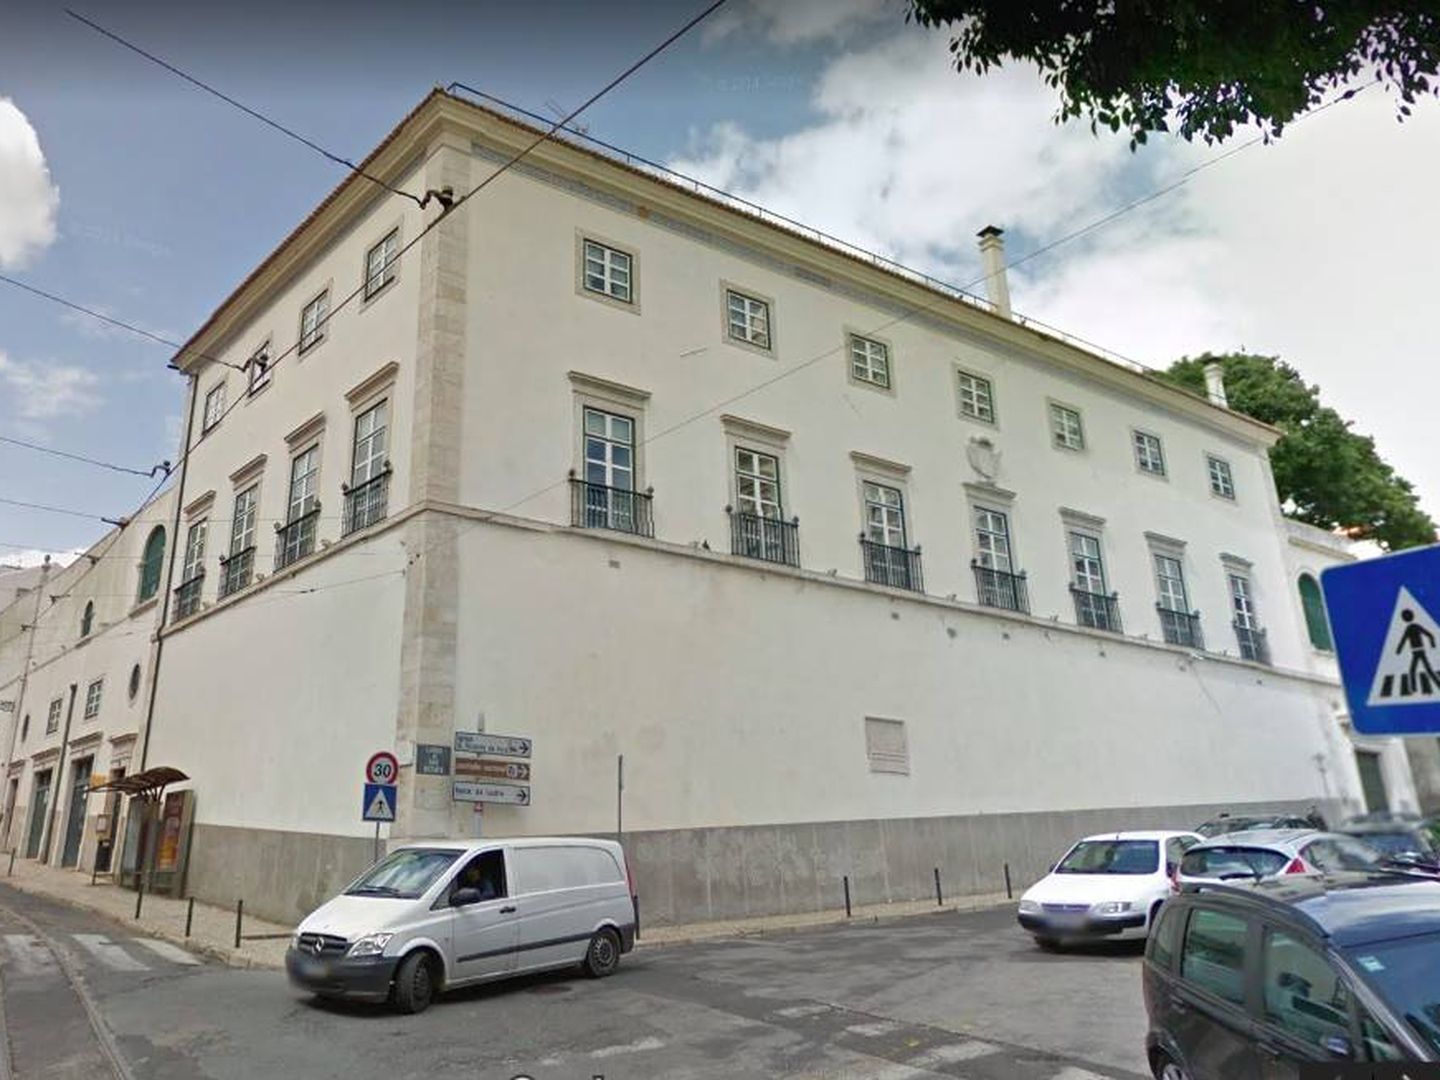 Palacio de San Vicente da Fora, Lisboa.